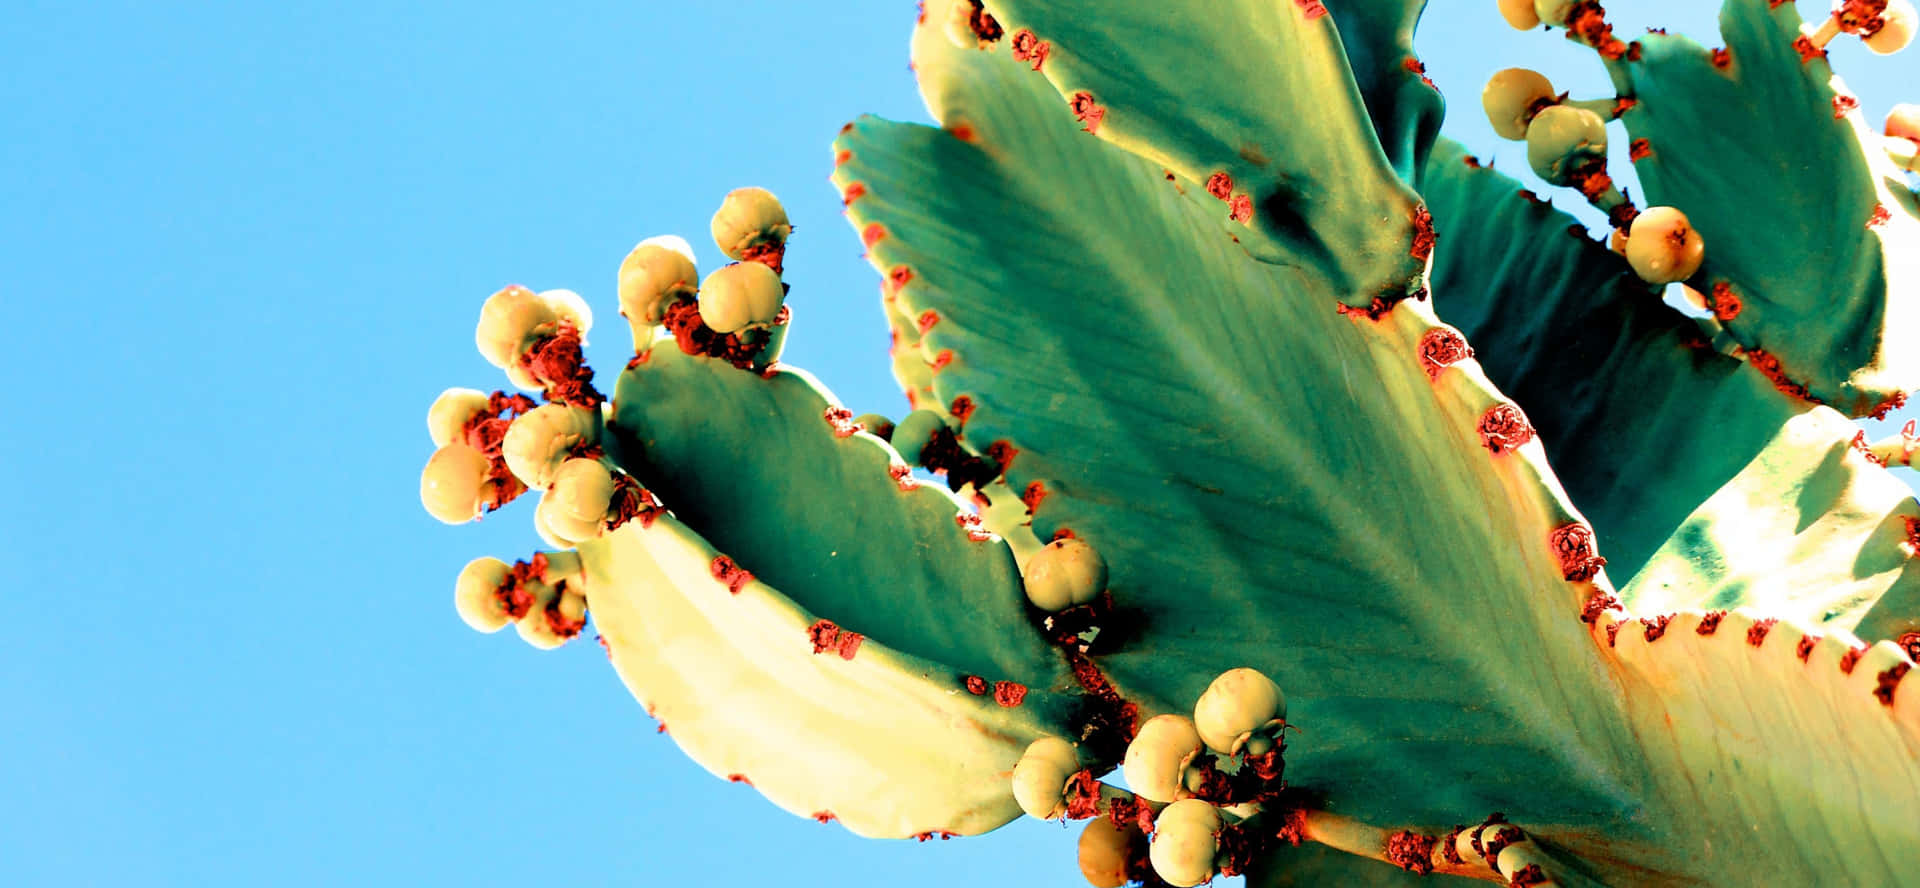 Imagende Cactus Sangrante En Verano.